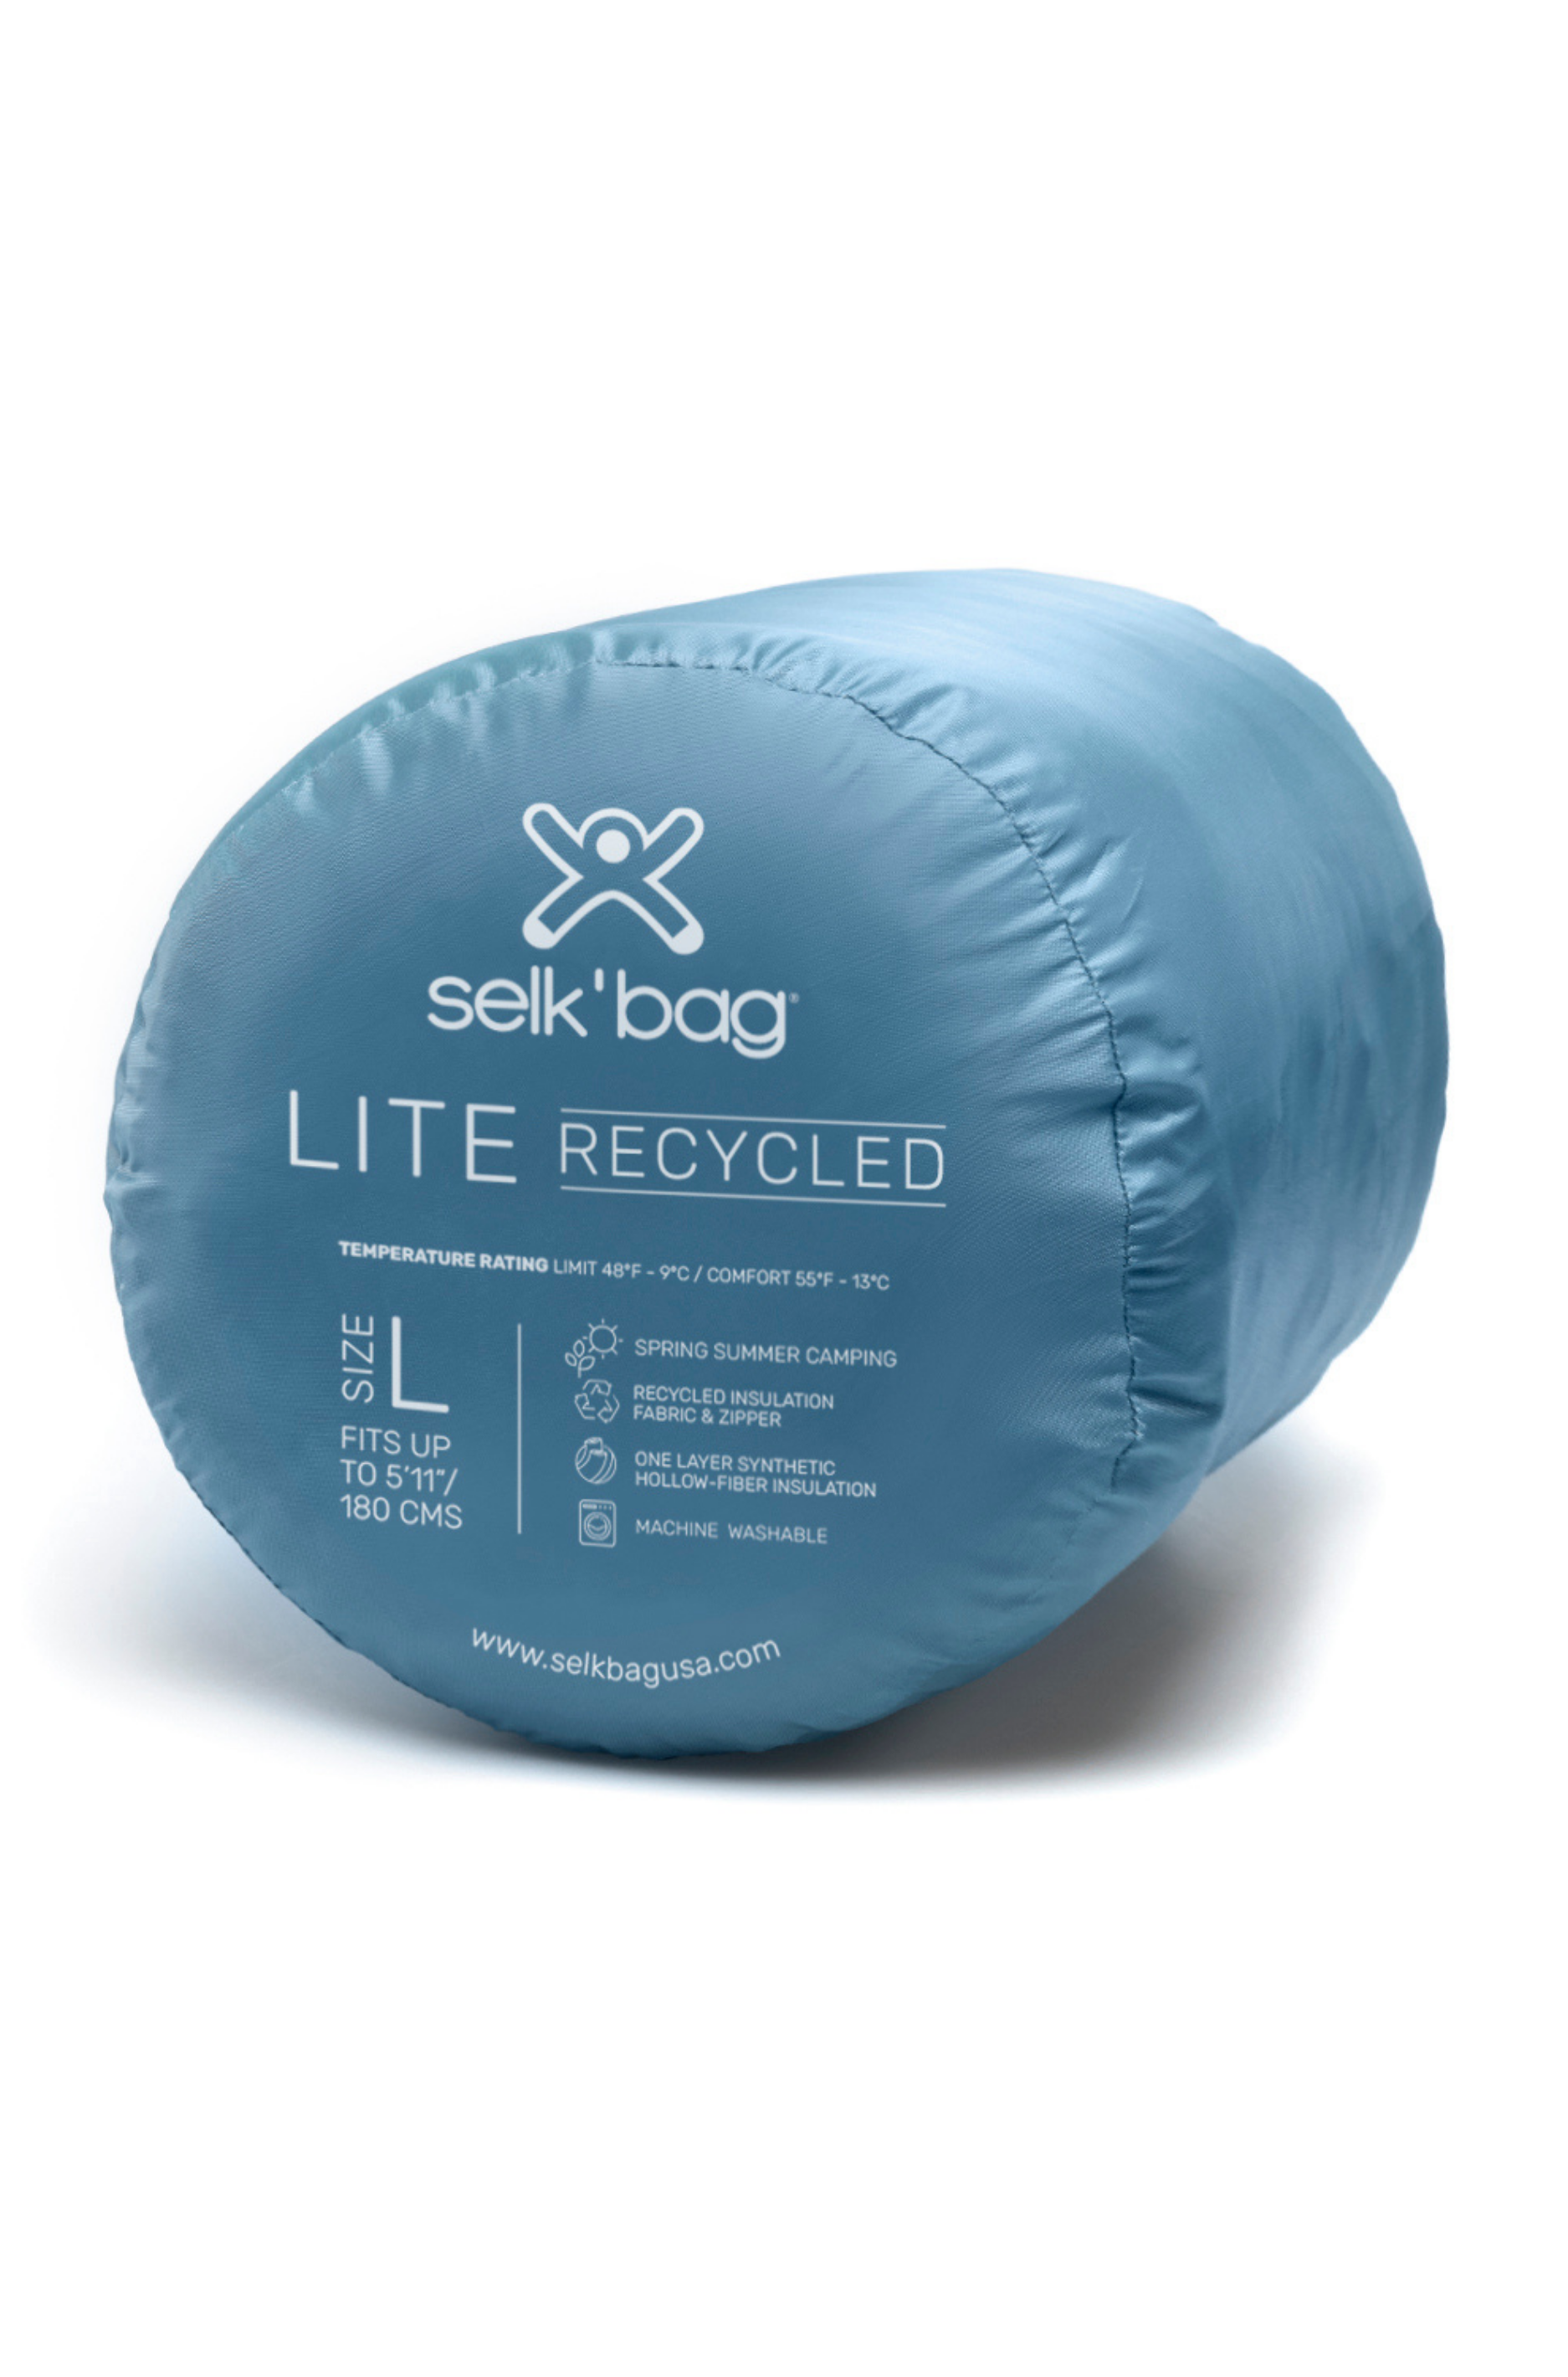 Selk'bag wearable sleeping bag gets removable booties